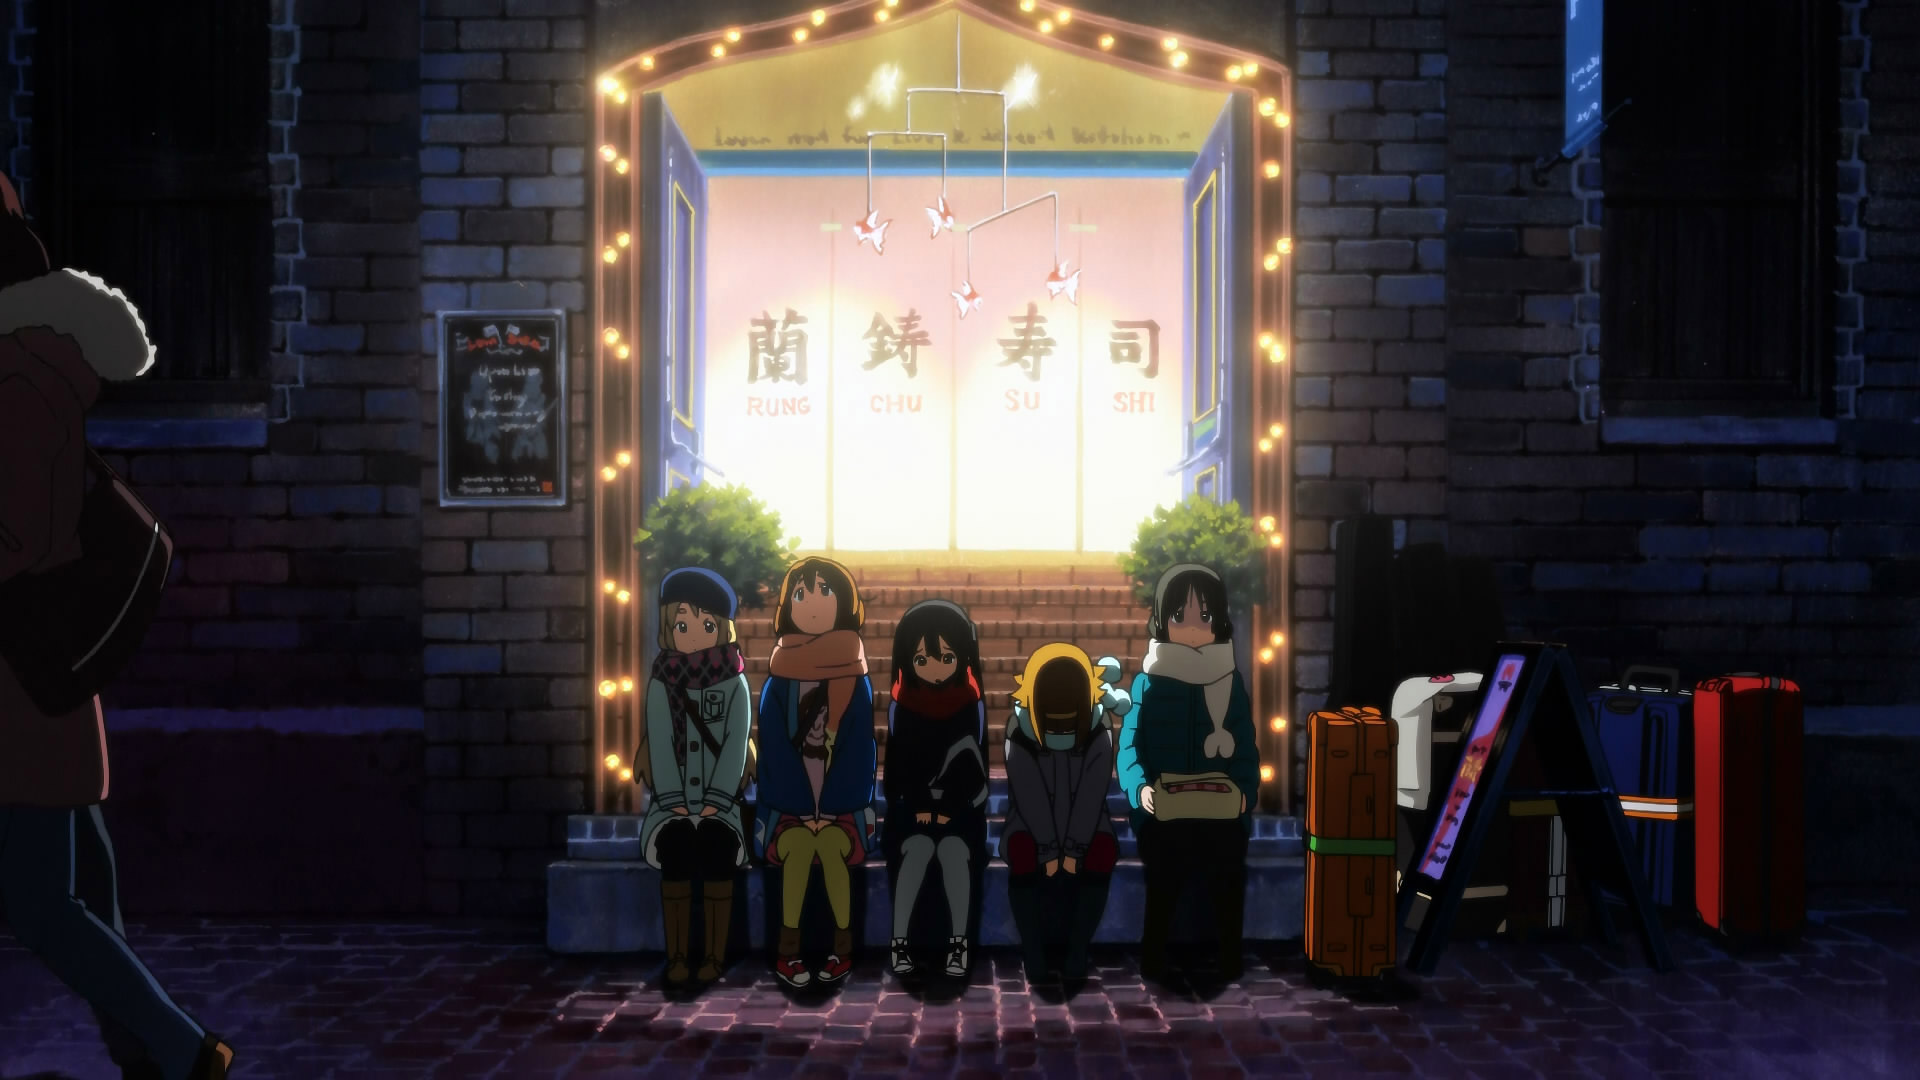 Descarga gratuita de fondo de pantalla para móvil de Animado, Mio Akiyama, ¡kon!, Azusa Nakano, Ritsu Tainaka, Tsumugi Kotobuki, Yui Hirasawa.